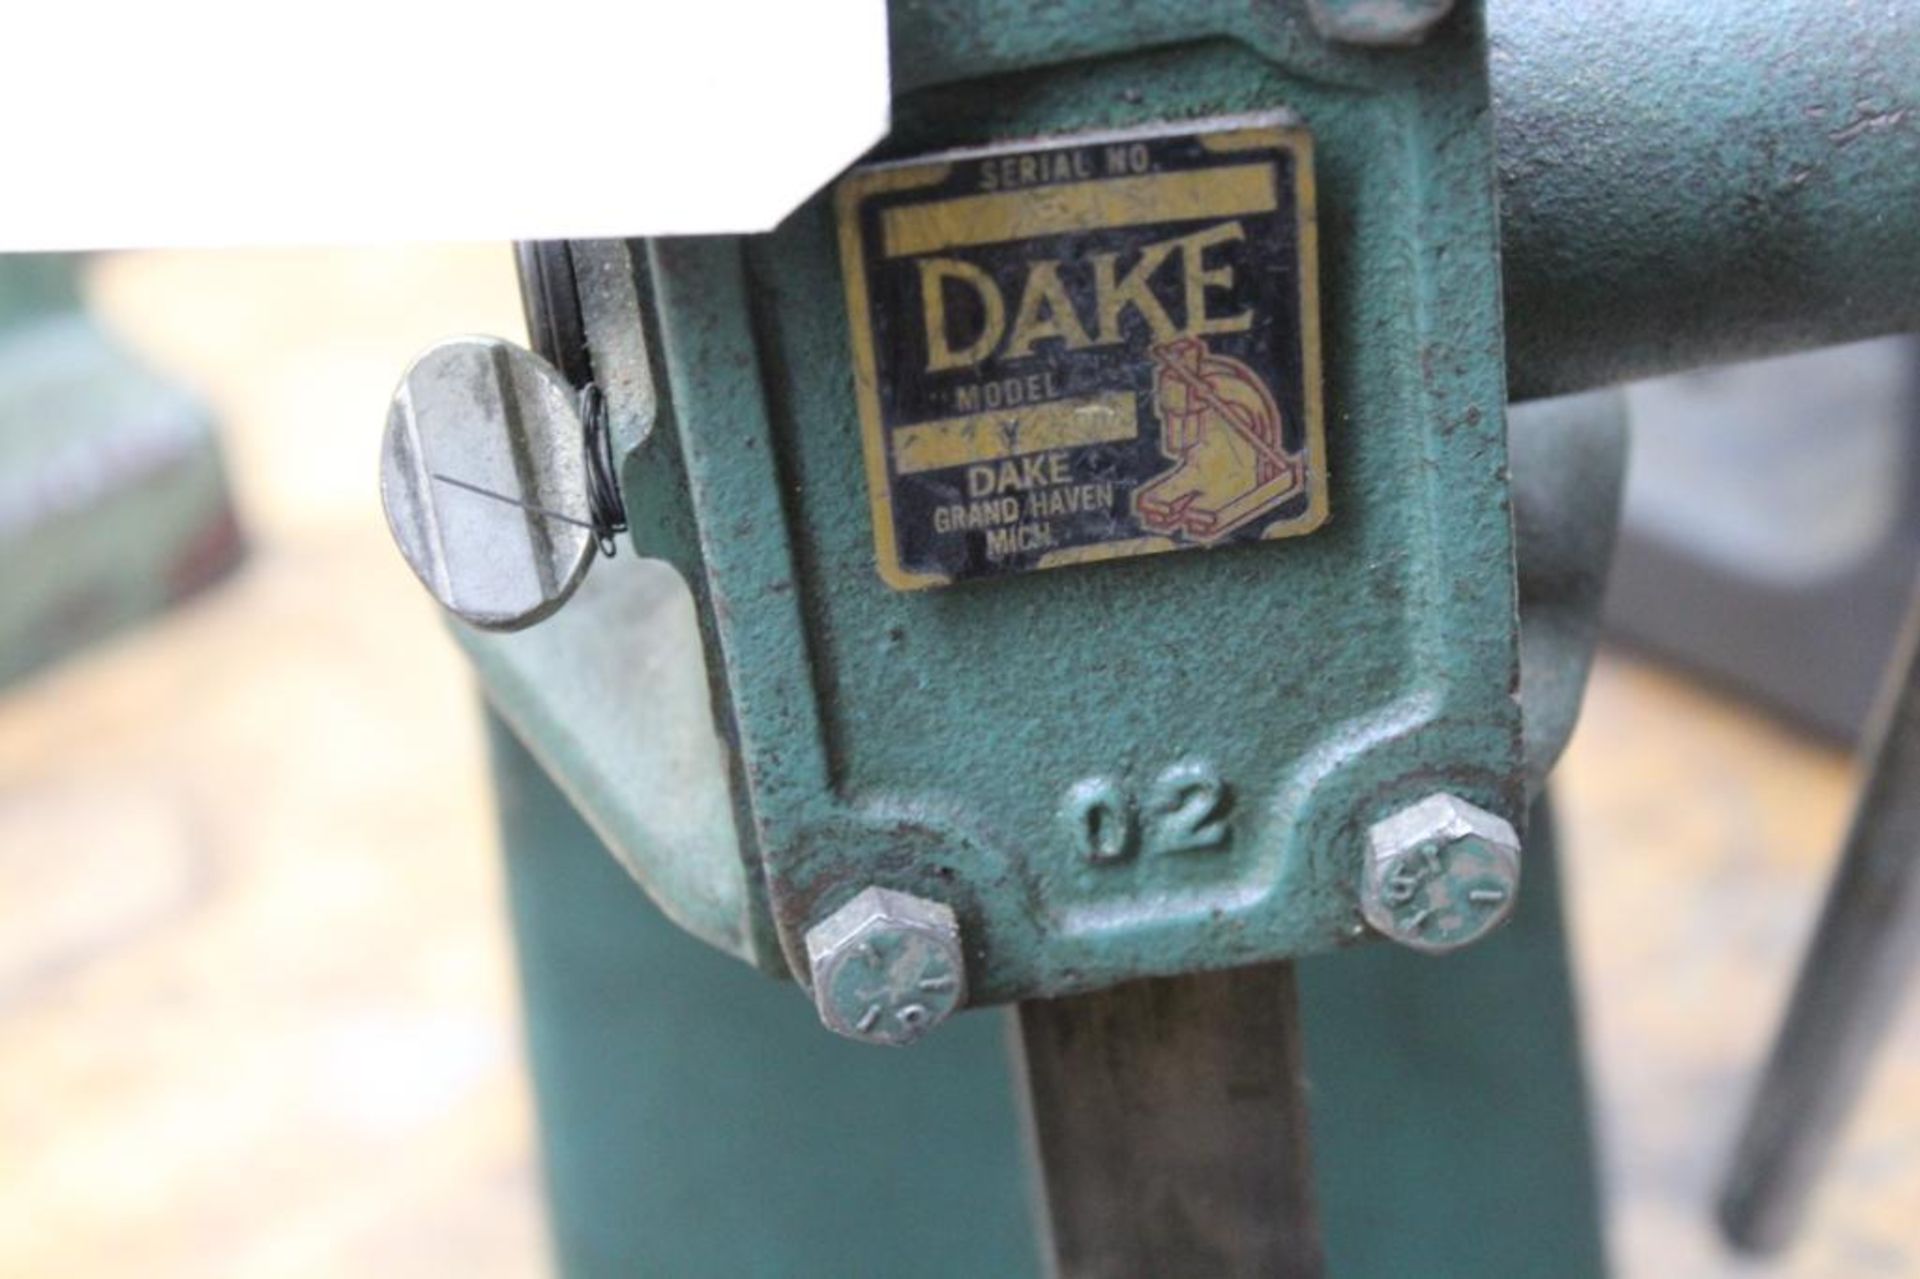 Dake No.Y arbor press - Image 3 of 4